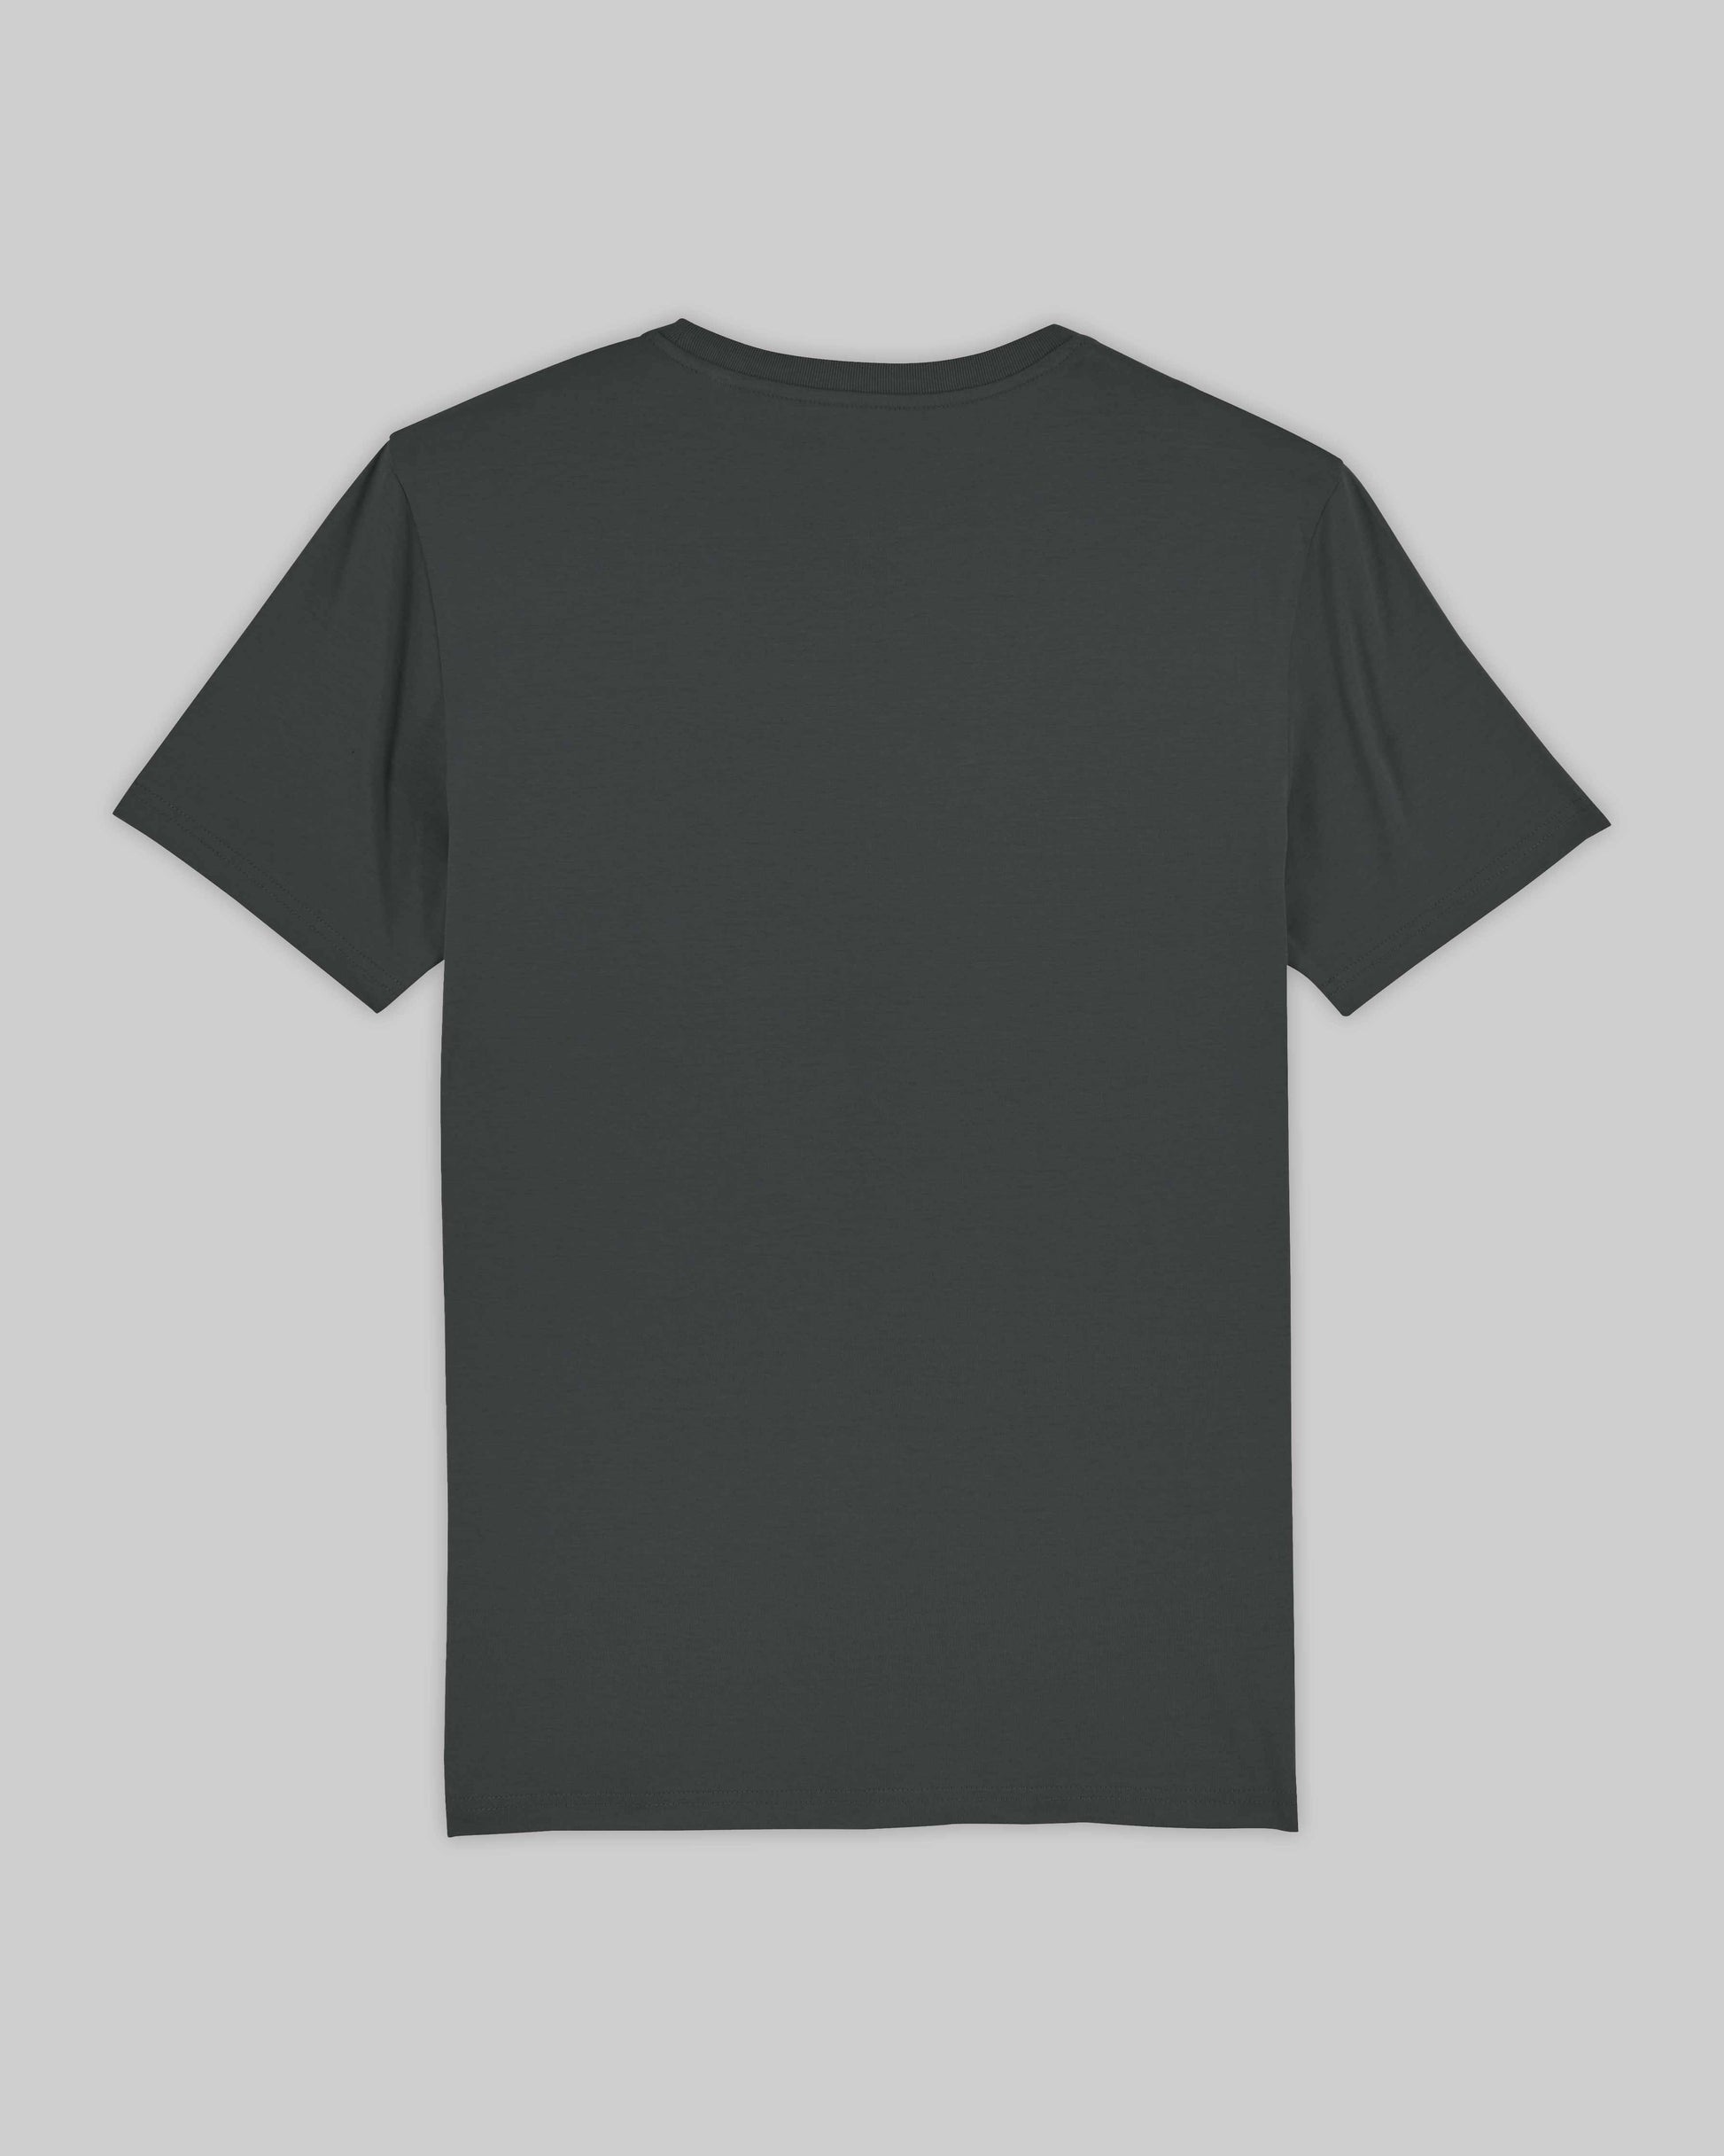 EINHORST® unisex Organic Shirt in "Anthracite" mit dem Motiv "proud Regenbogen" in der Kombination schwarzer Regenbogen mit schwarzer Schrift, Bild von Shirt von hinten